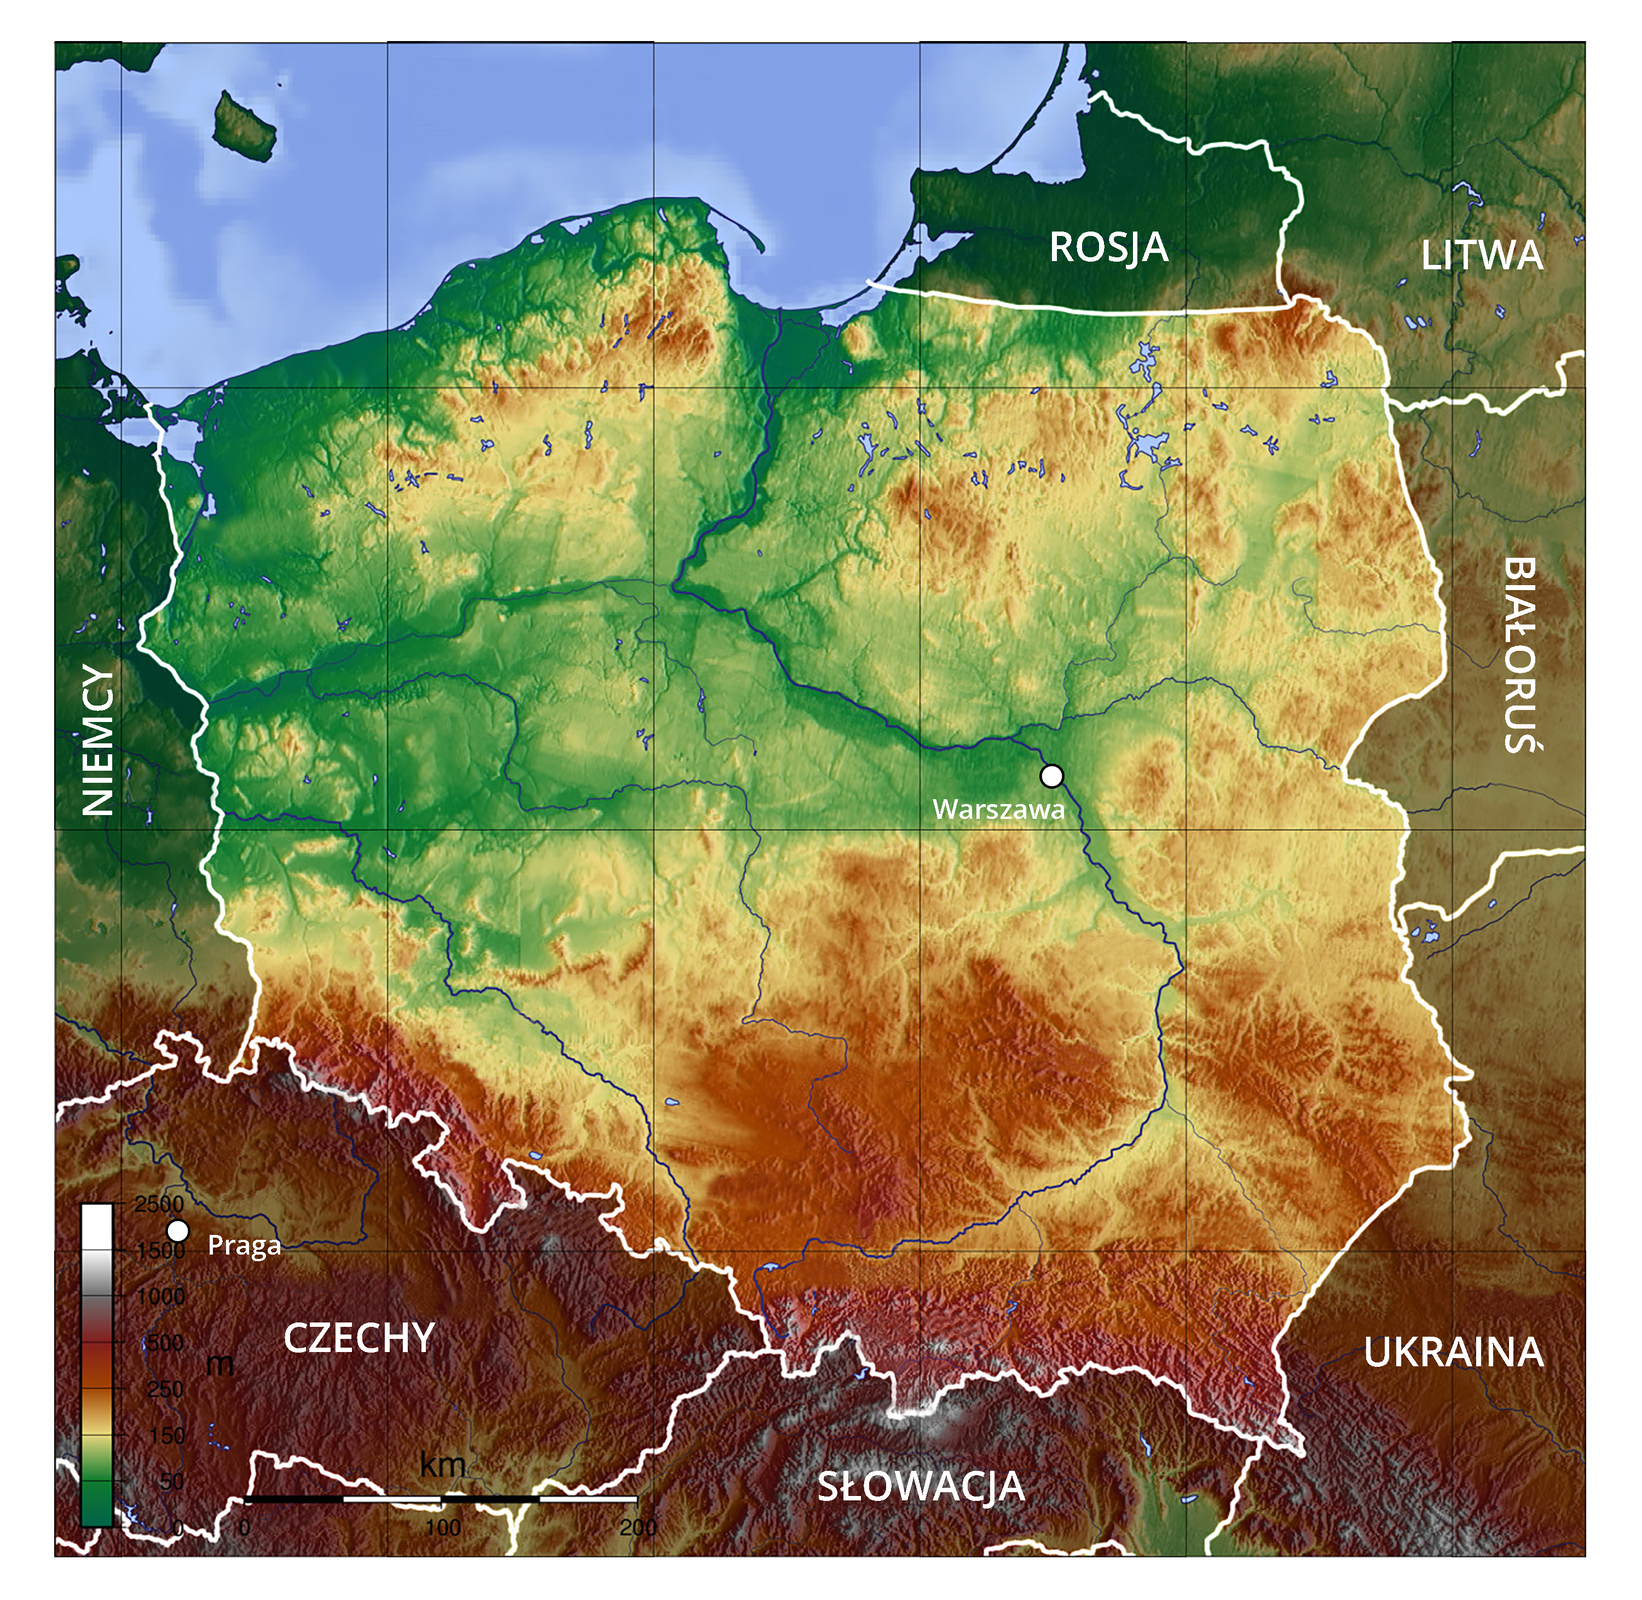 Mapa fizyczna Polski z zaznaczoną stolicą – Warszawą i państwami ościennymi: Rosją, Litwą, Białorusią, Ukrainą, Słowacją, Czechami i Niemcami.